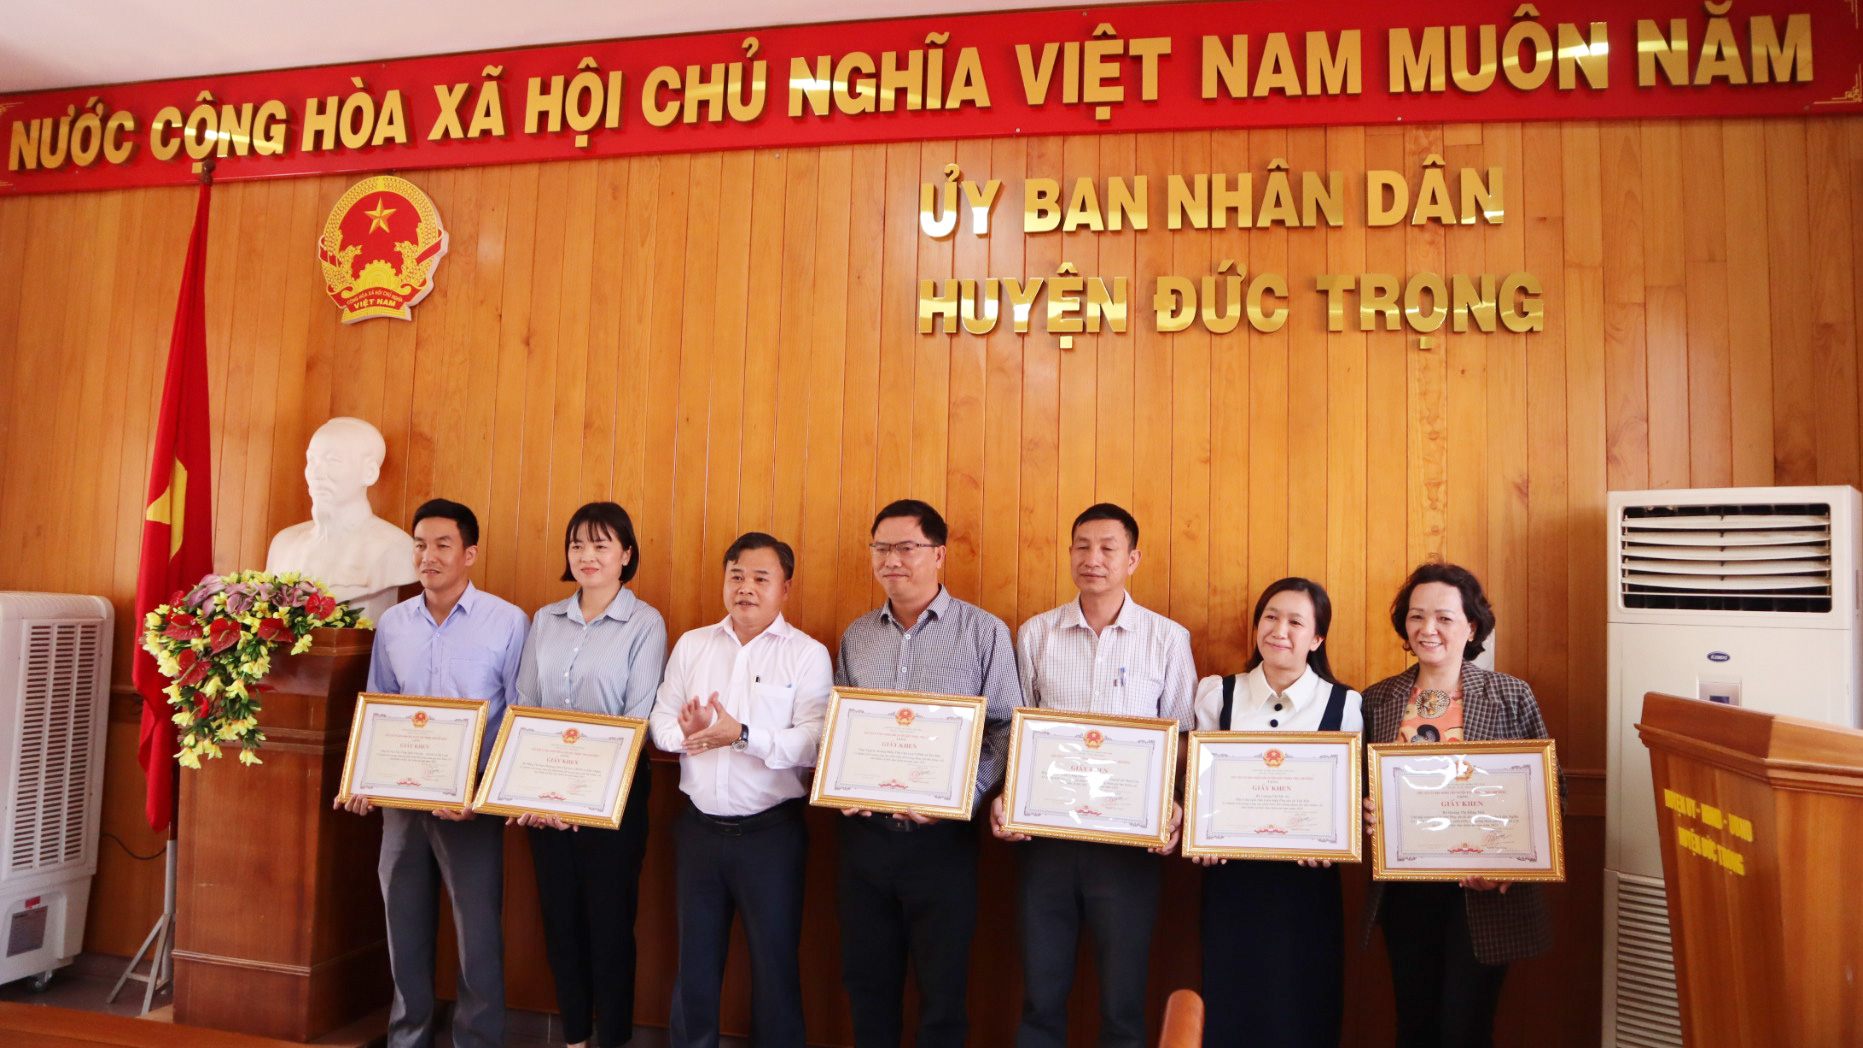 Đồng chí Lê Nguyên Hoàng - Phó Chủ tịch UBND huyện, trao Giấy khen cho các cá nhân đạt 
thành tích cao trong công tác tuyên truyền, vận động đối tượng tham gia BHYT, BHXH năm 2023